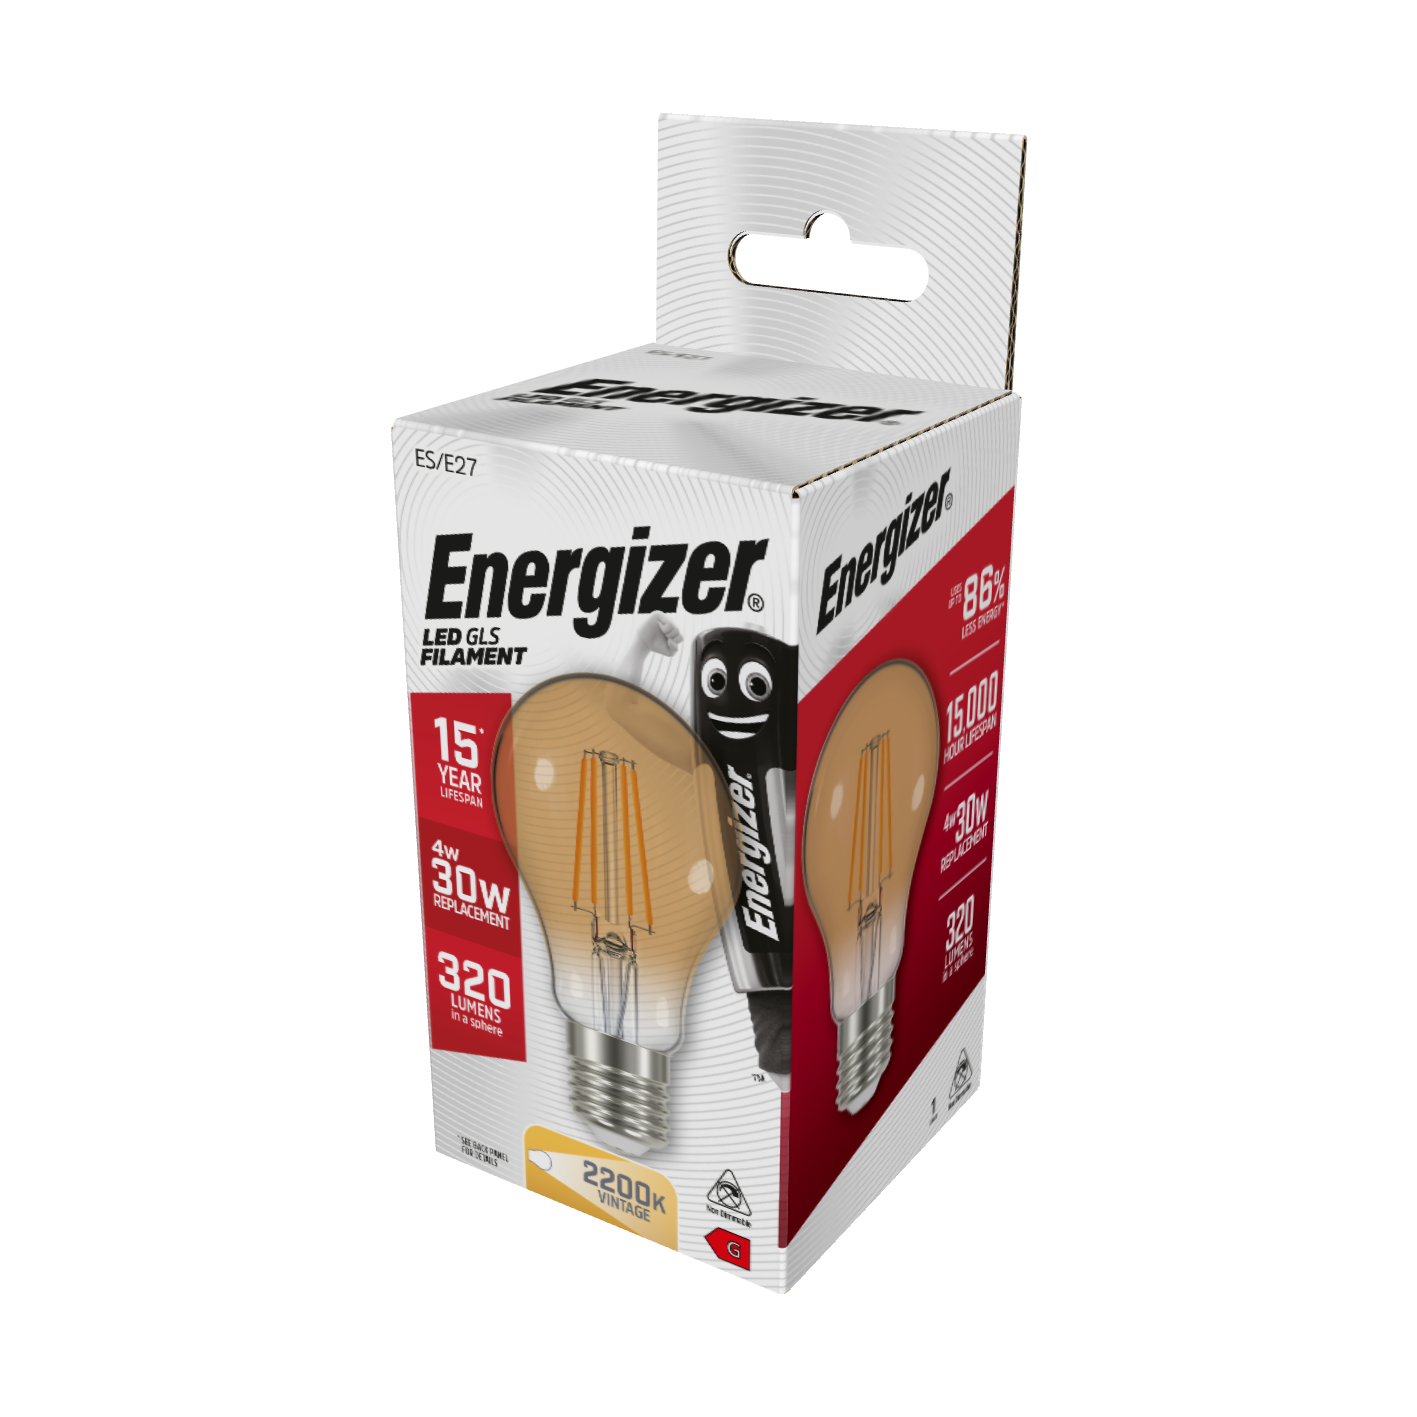 Energizer LED Filamento Oro GLS E27 (ES) 320lm 4W 2.200K (Blanco Cálido), Caja de 1